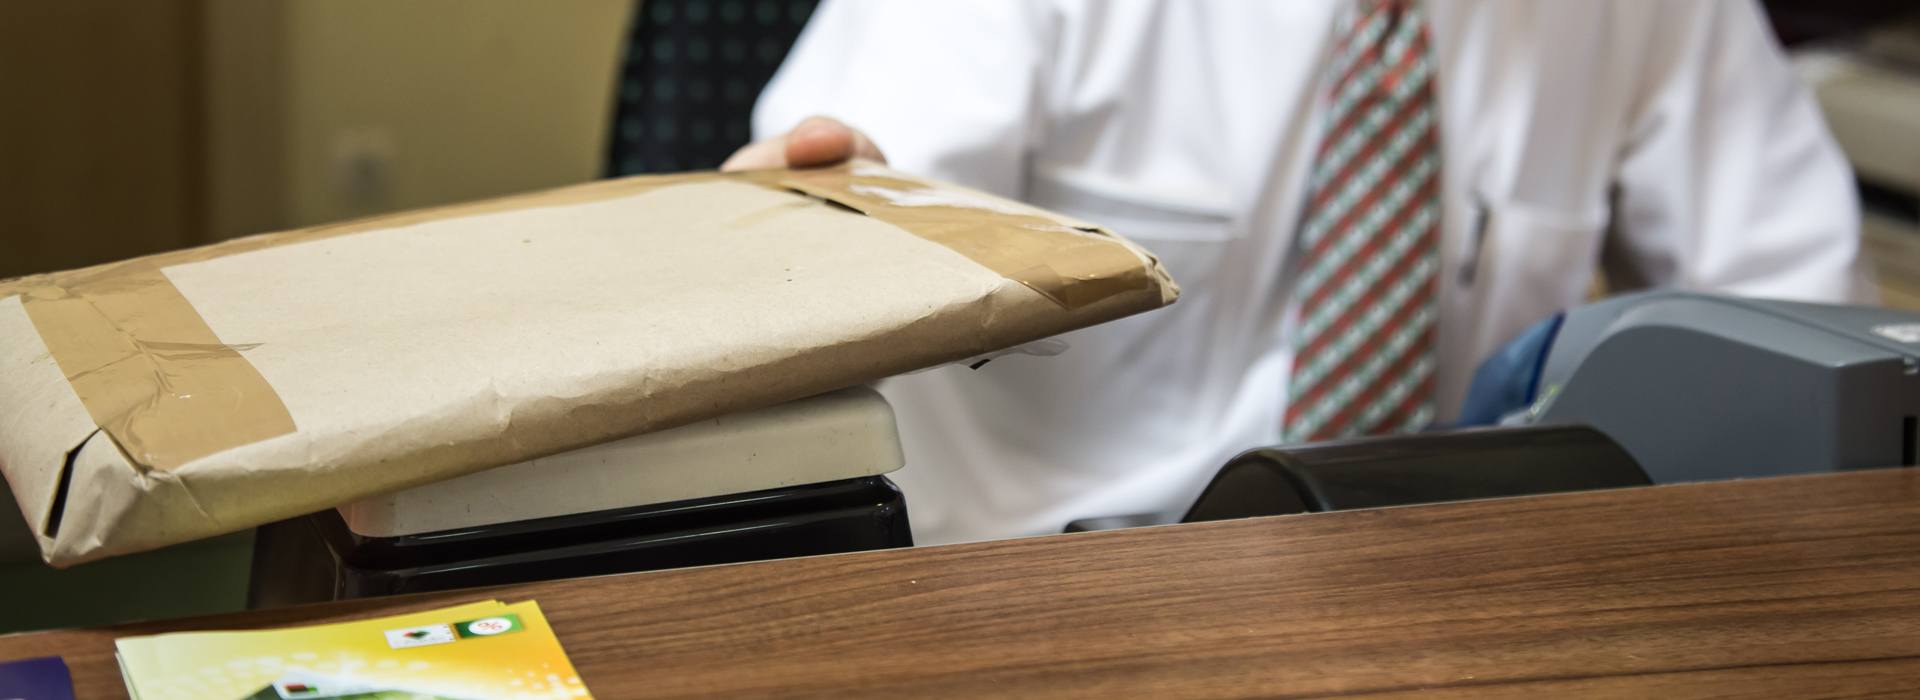 A képen egy nyakkendős ügyintéző látható, aki egy lapos csomagot mér le egy kis postai mérlegen.